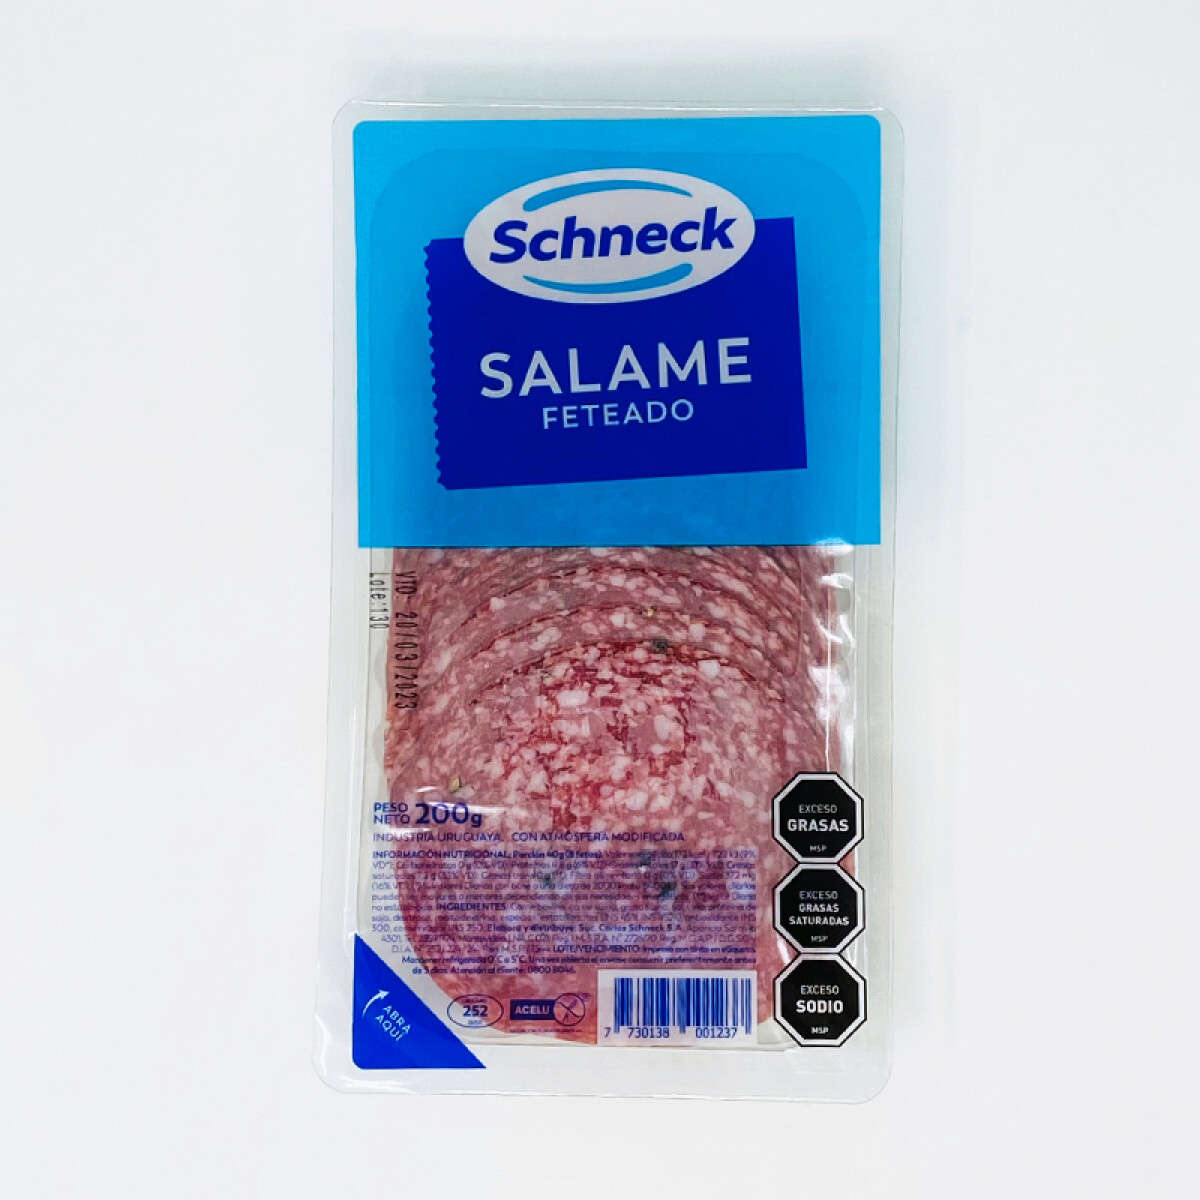 Salame Schneck feteado envasado en atmósfera modificada - 200 g. 